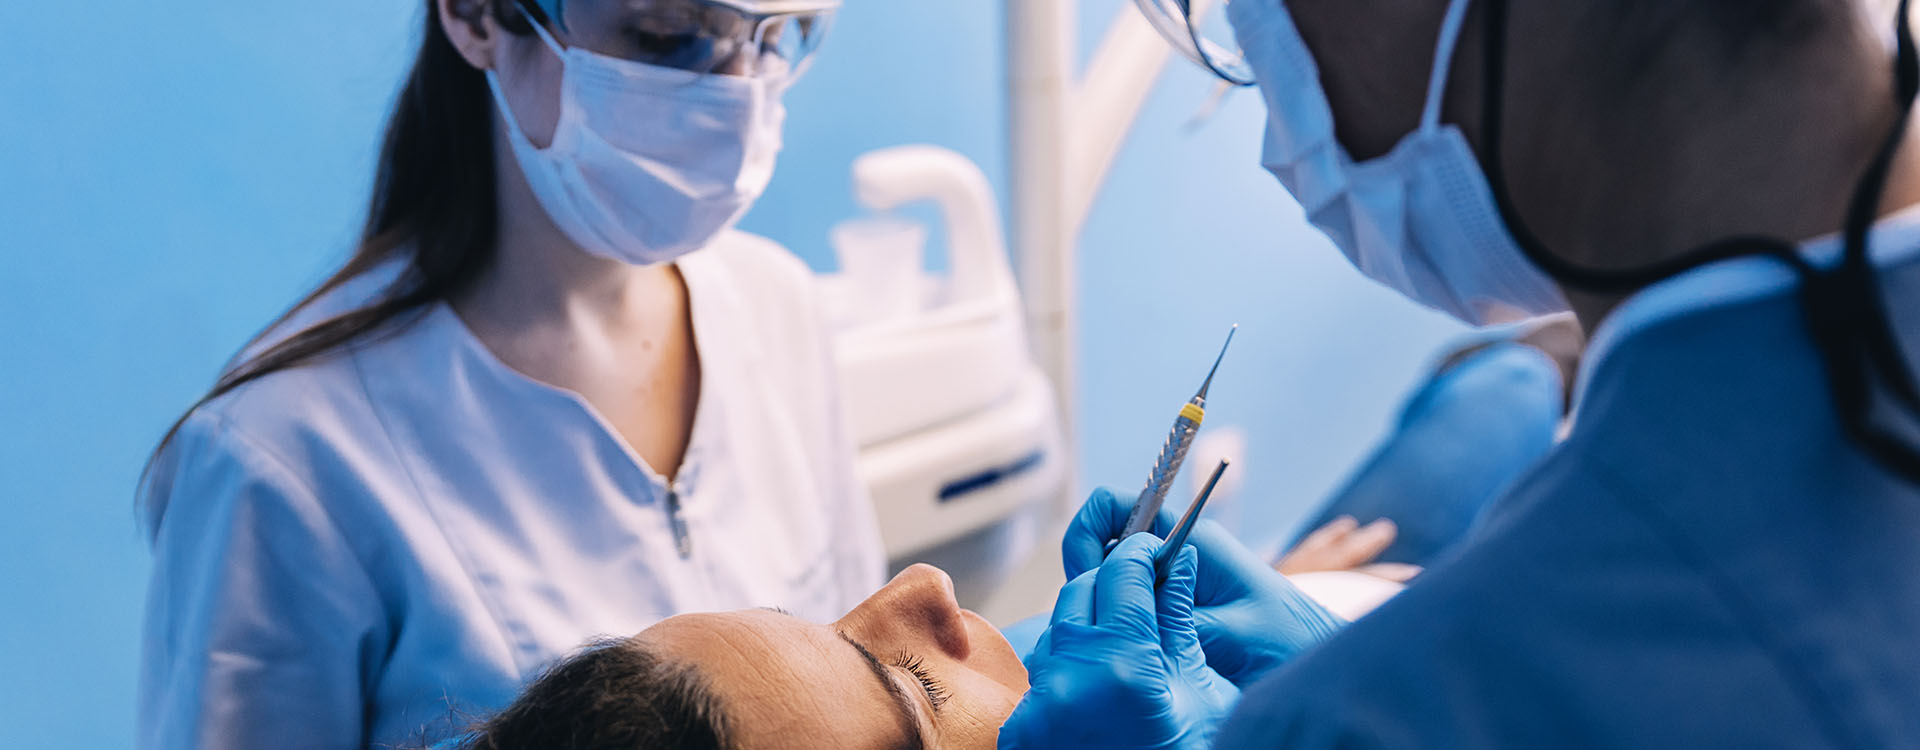 Clínica Dental Andrea Compte, tu Centro Odontológico especializado. Cirugía bucal en Vinaròs. Dentistas con un paciente durante una intervención dental.